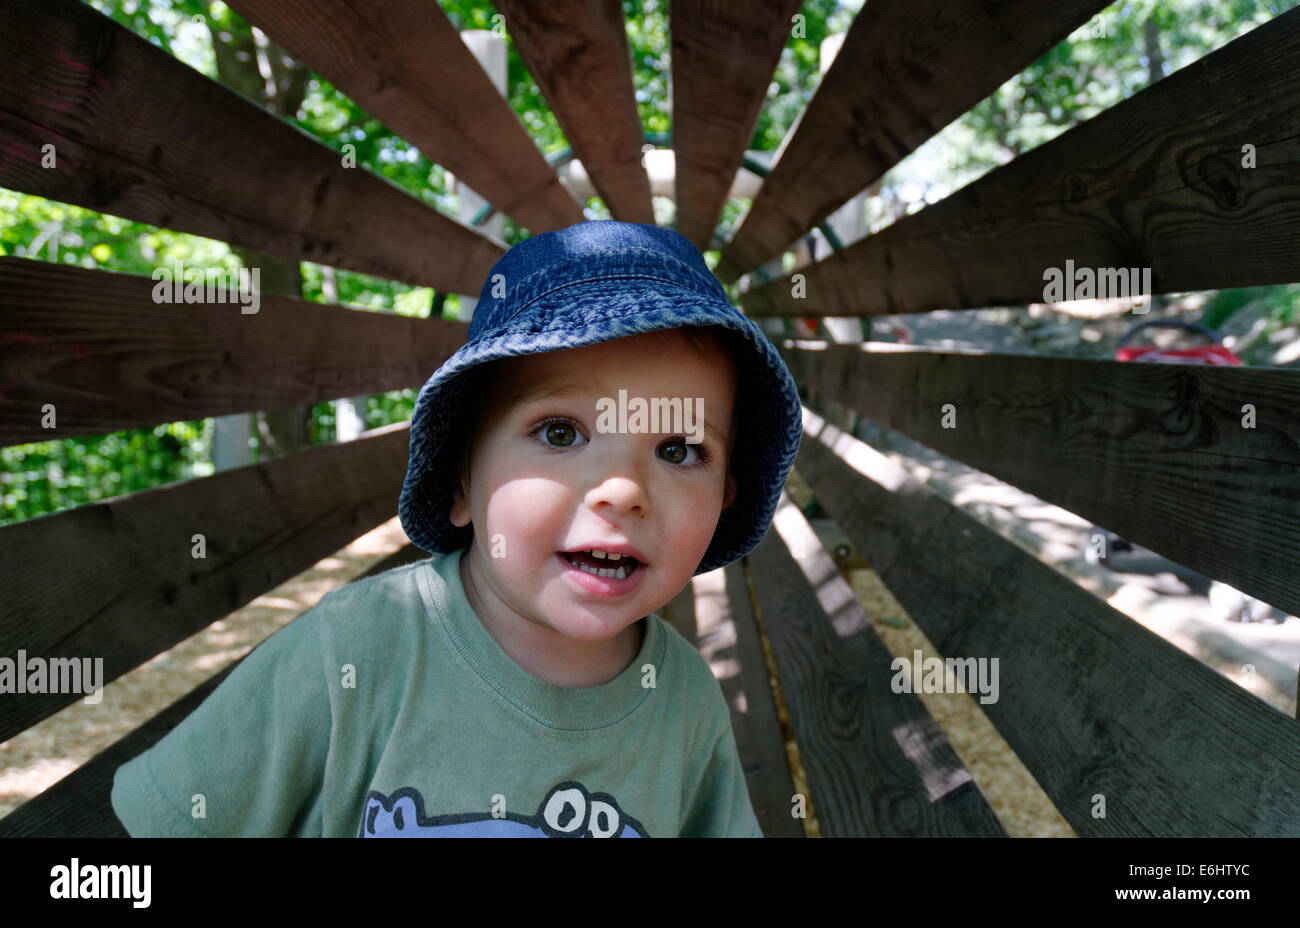 Ein kleiner Junge in einem hölzernen Tunnel auf einem Hindernisparcours Stockfoto